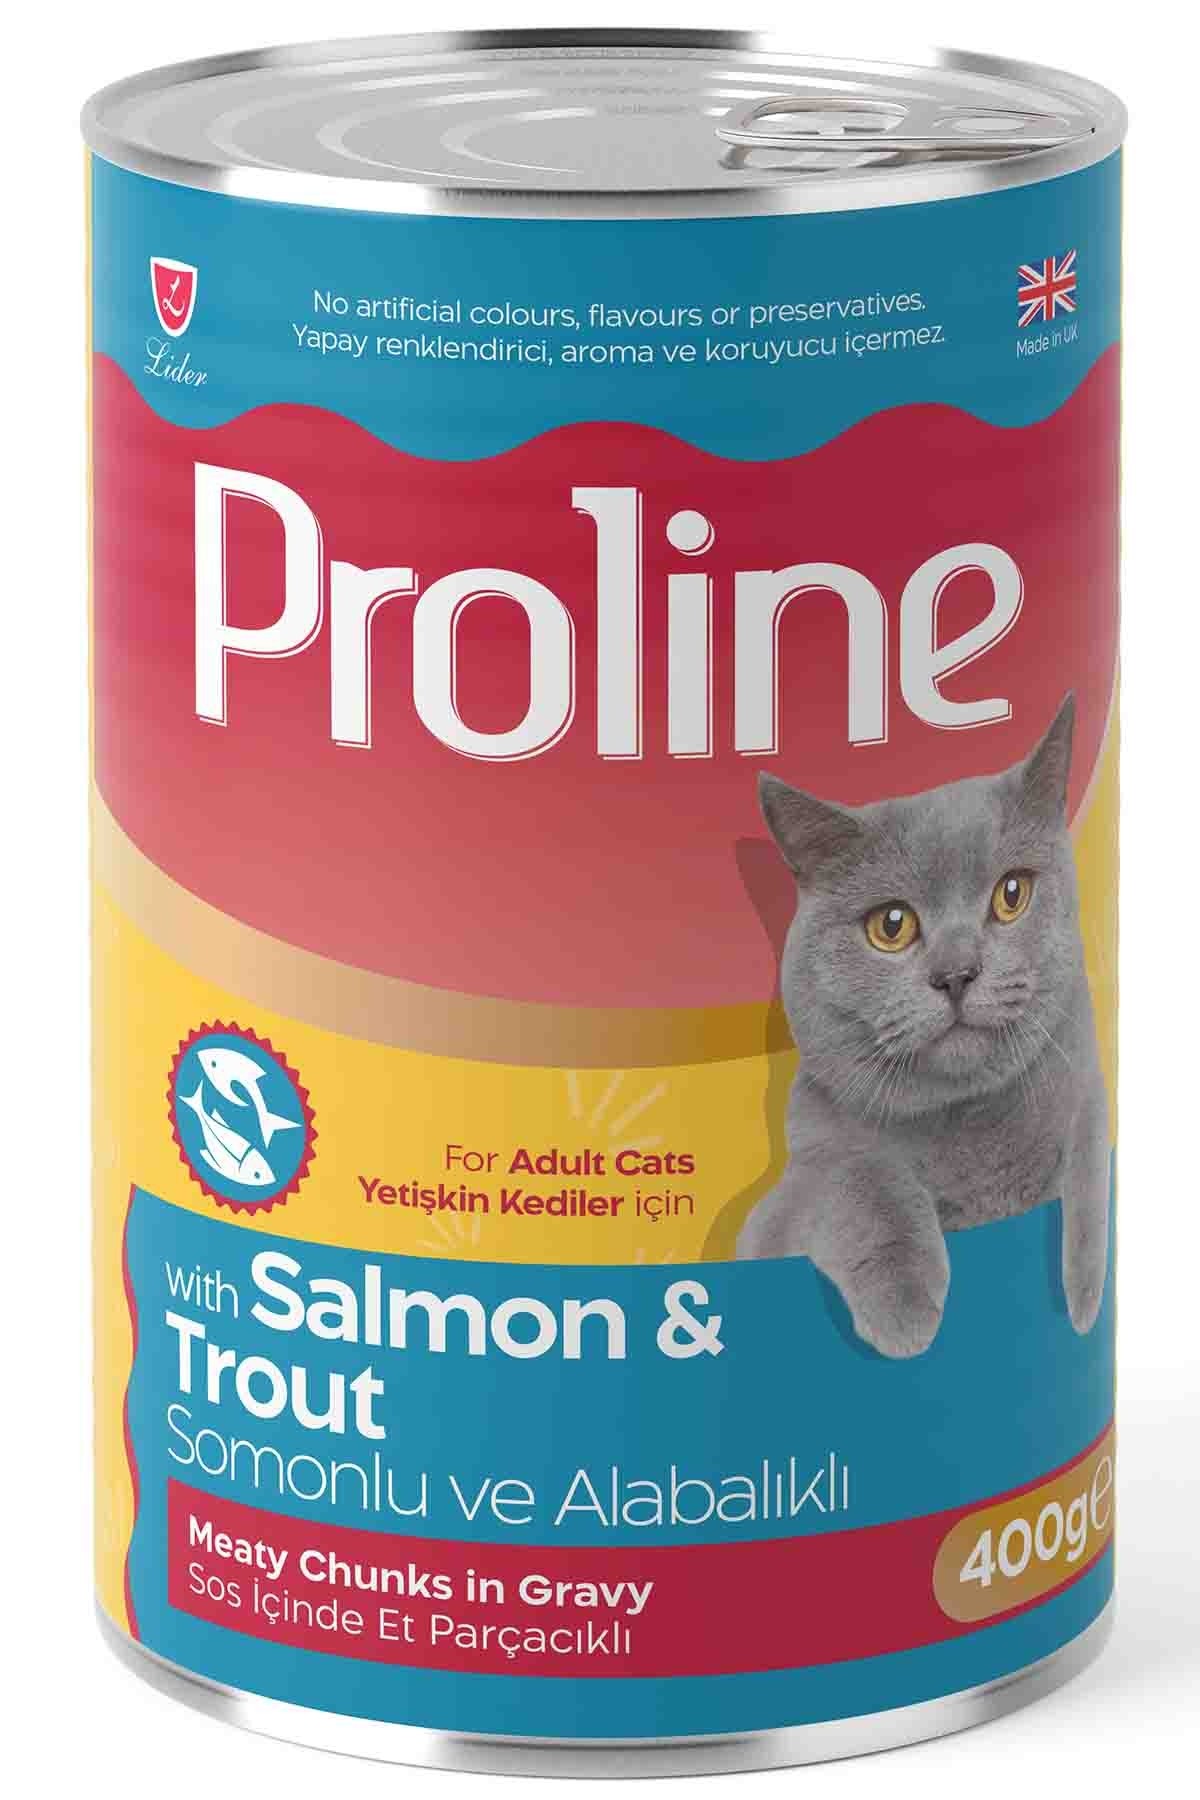 Proline Sos İçinde Et Parçacıklı Somonlu ve Alabalıklı Yetişkin Kedi Konservesi 400 Gr